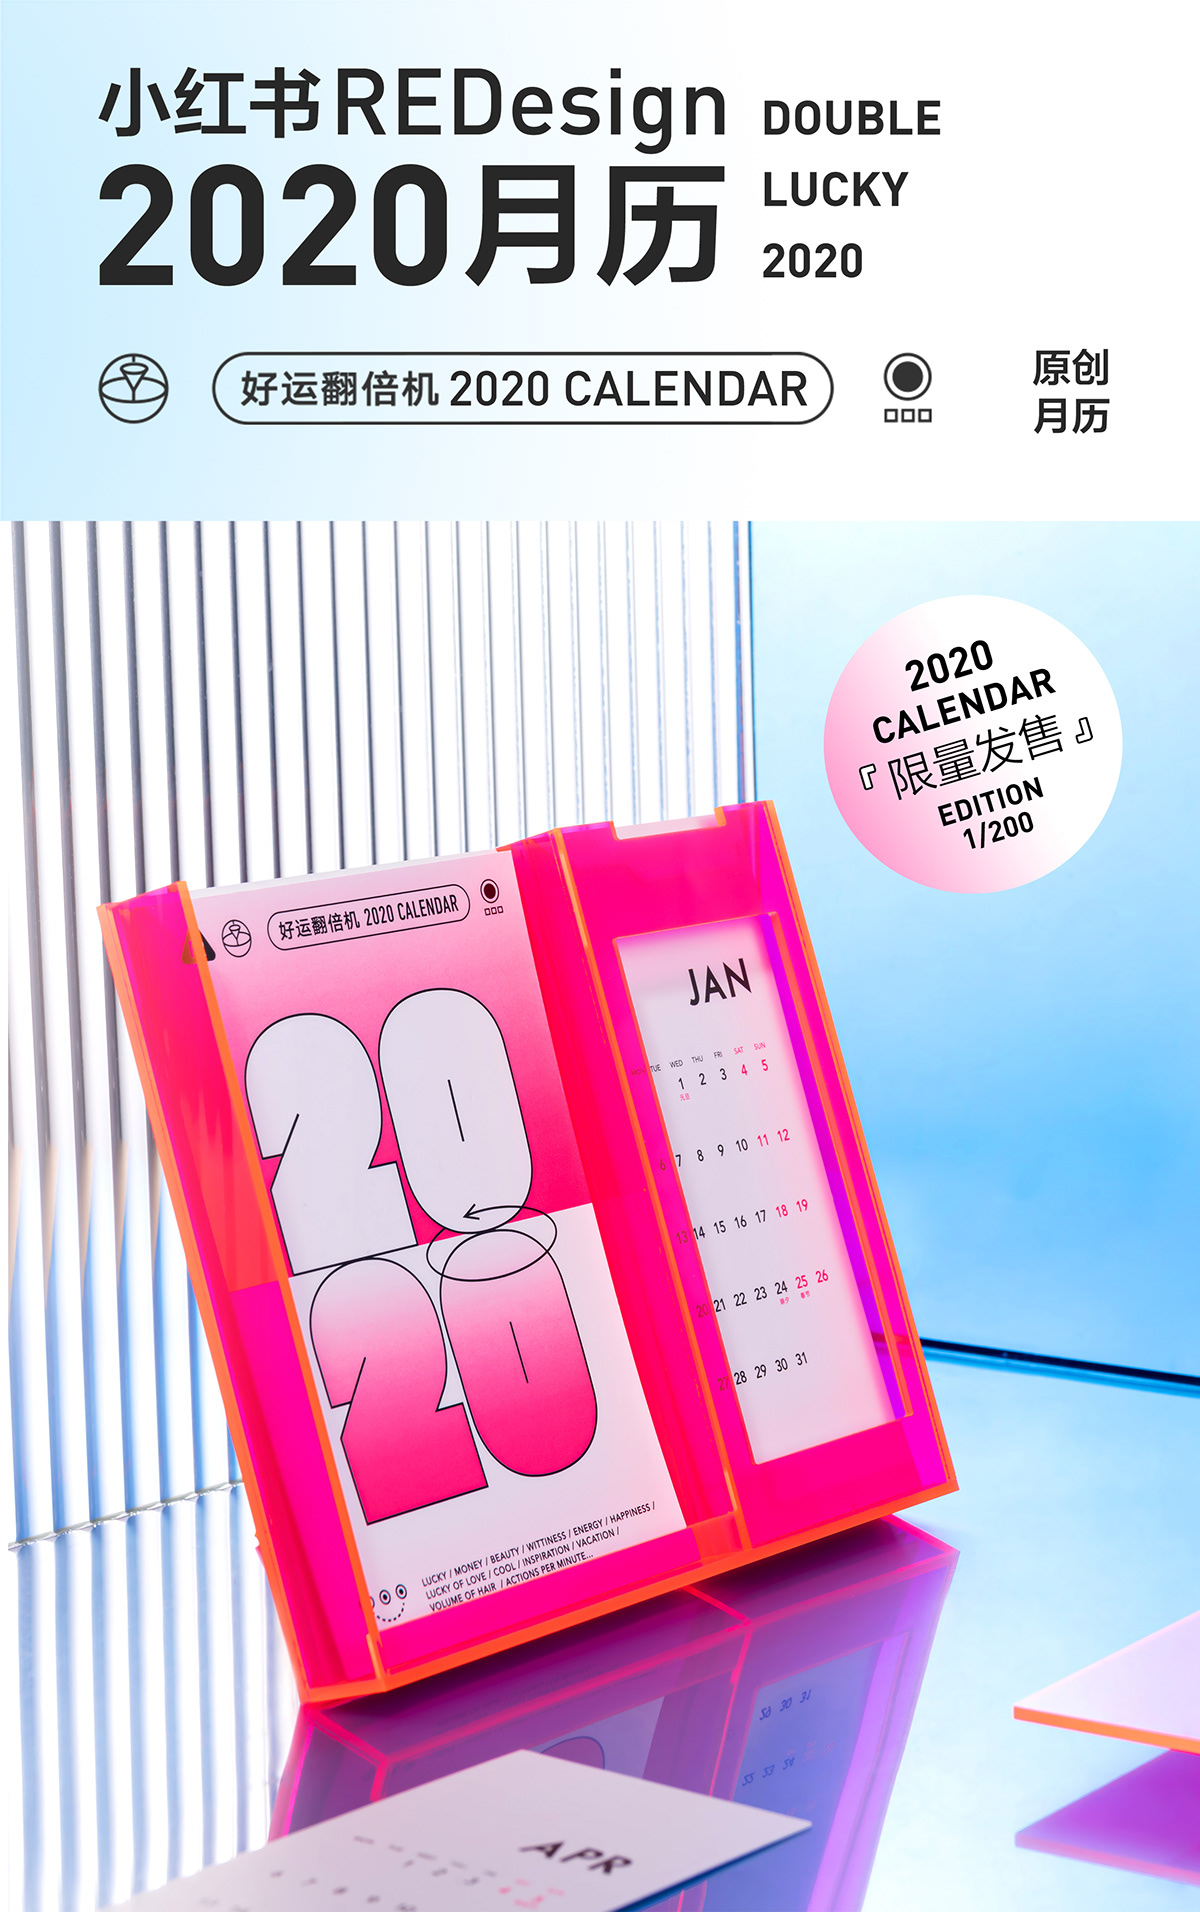 月历 calendar 2020月历 产品摄影 月历设计 亚历克